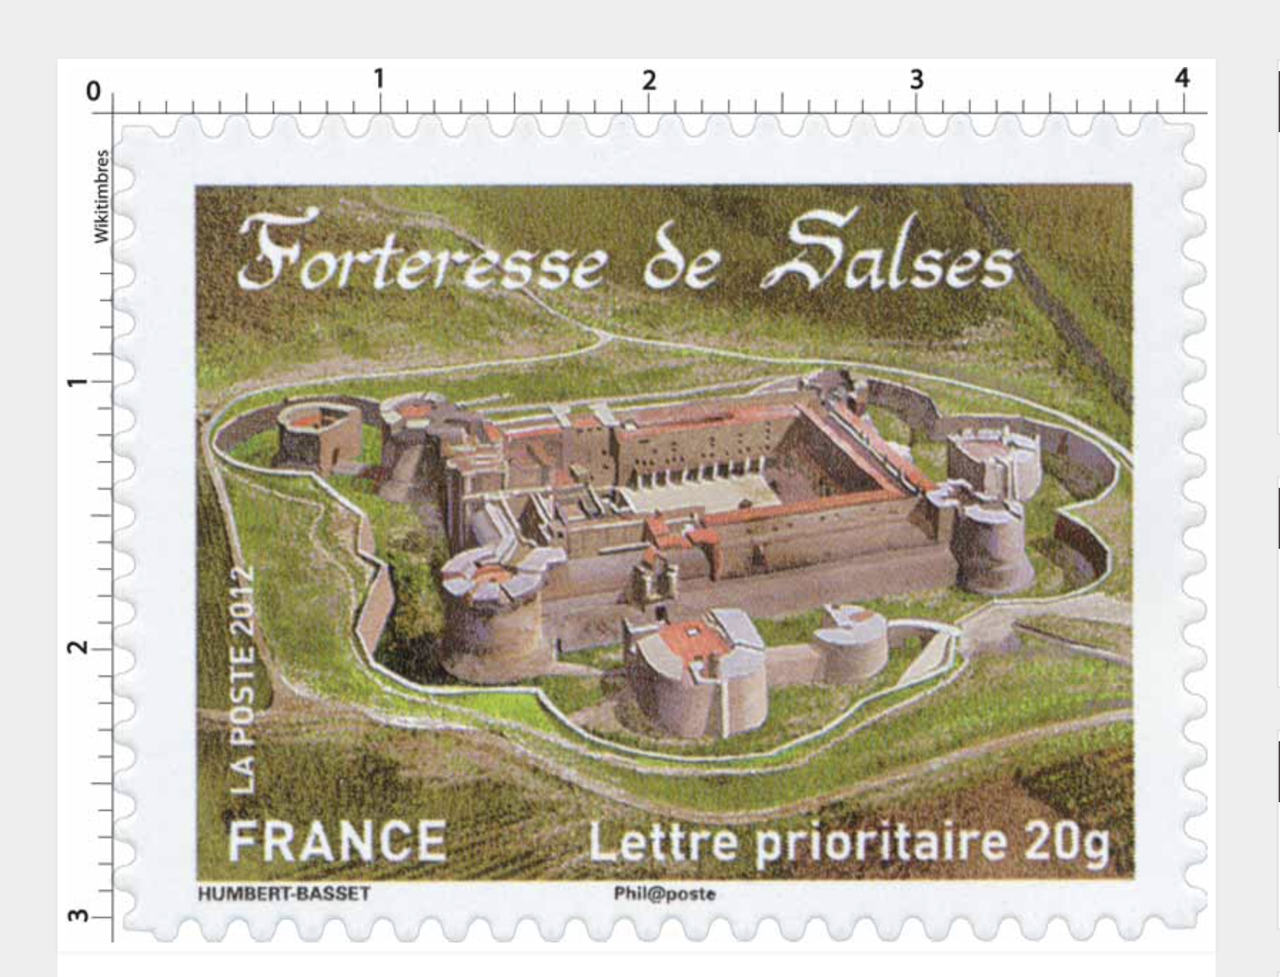 Il y a dix ans, le dessinateur avait imaginé ce timbre à l'effigie de la Forteresse de Salses.